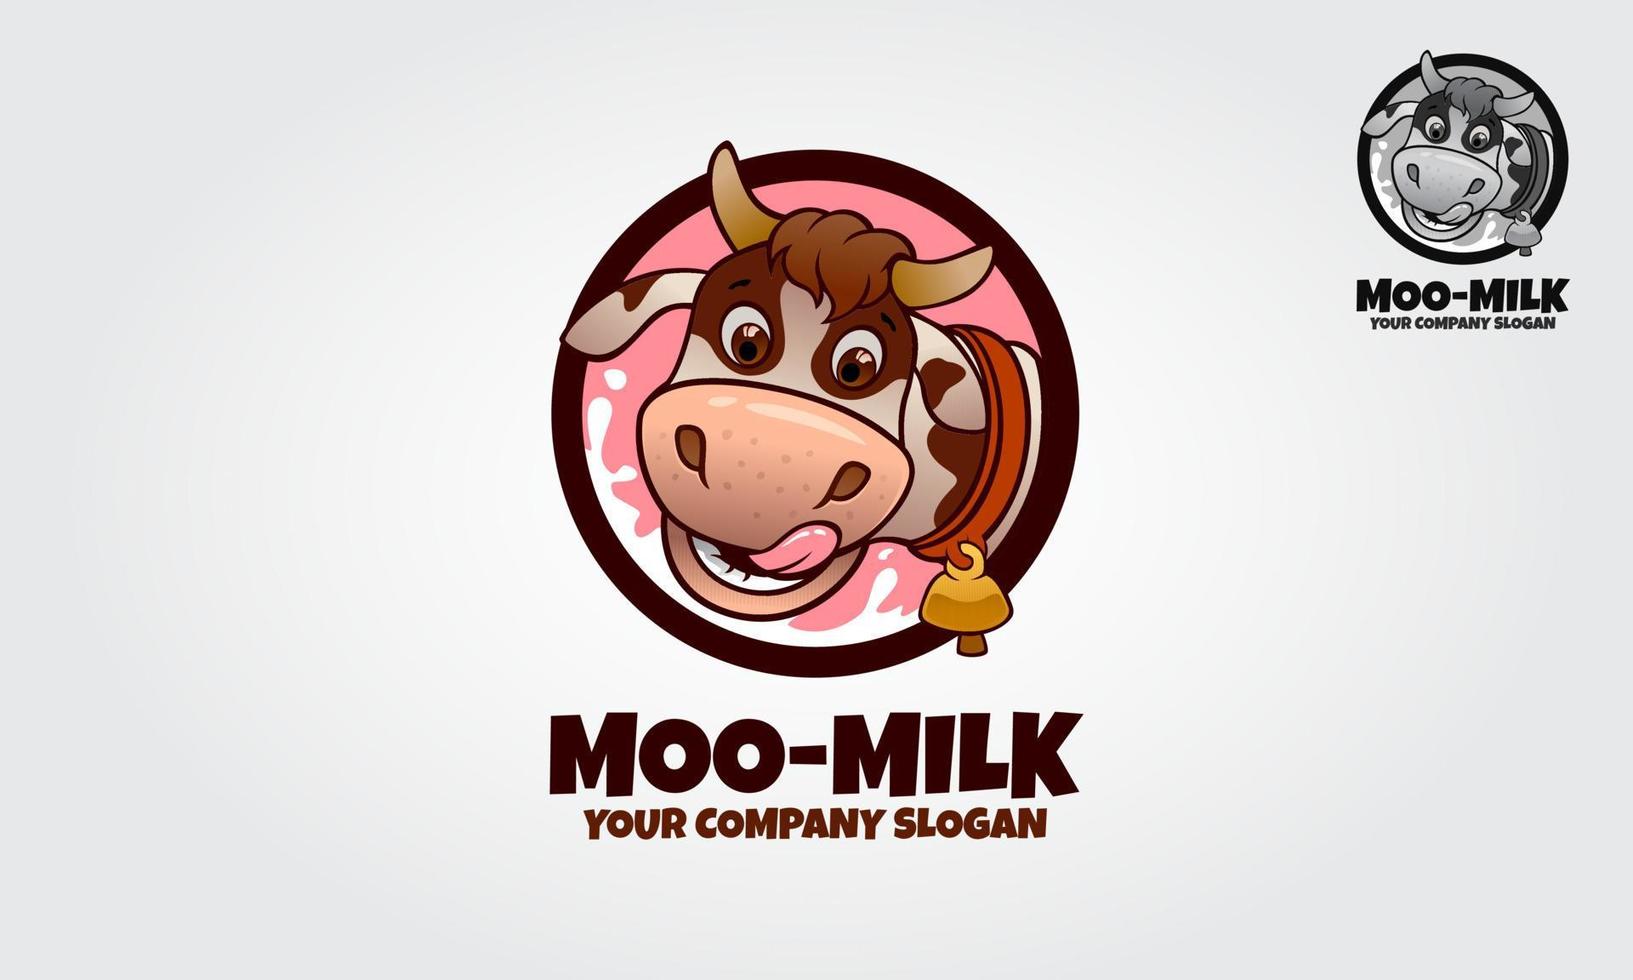 personnage de dessin animé de mascotte de lait moo. un modèle de logo de personnage de dessin animé de vache. ce logo est idéal pour les logos alimentaires, les produits laitiers ou fromagers, les produits de crème glacée, les produits de yaourt et autres. vecteur